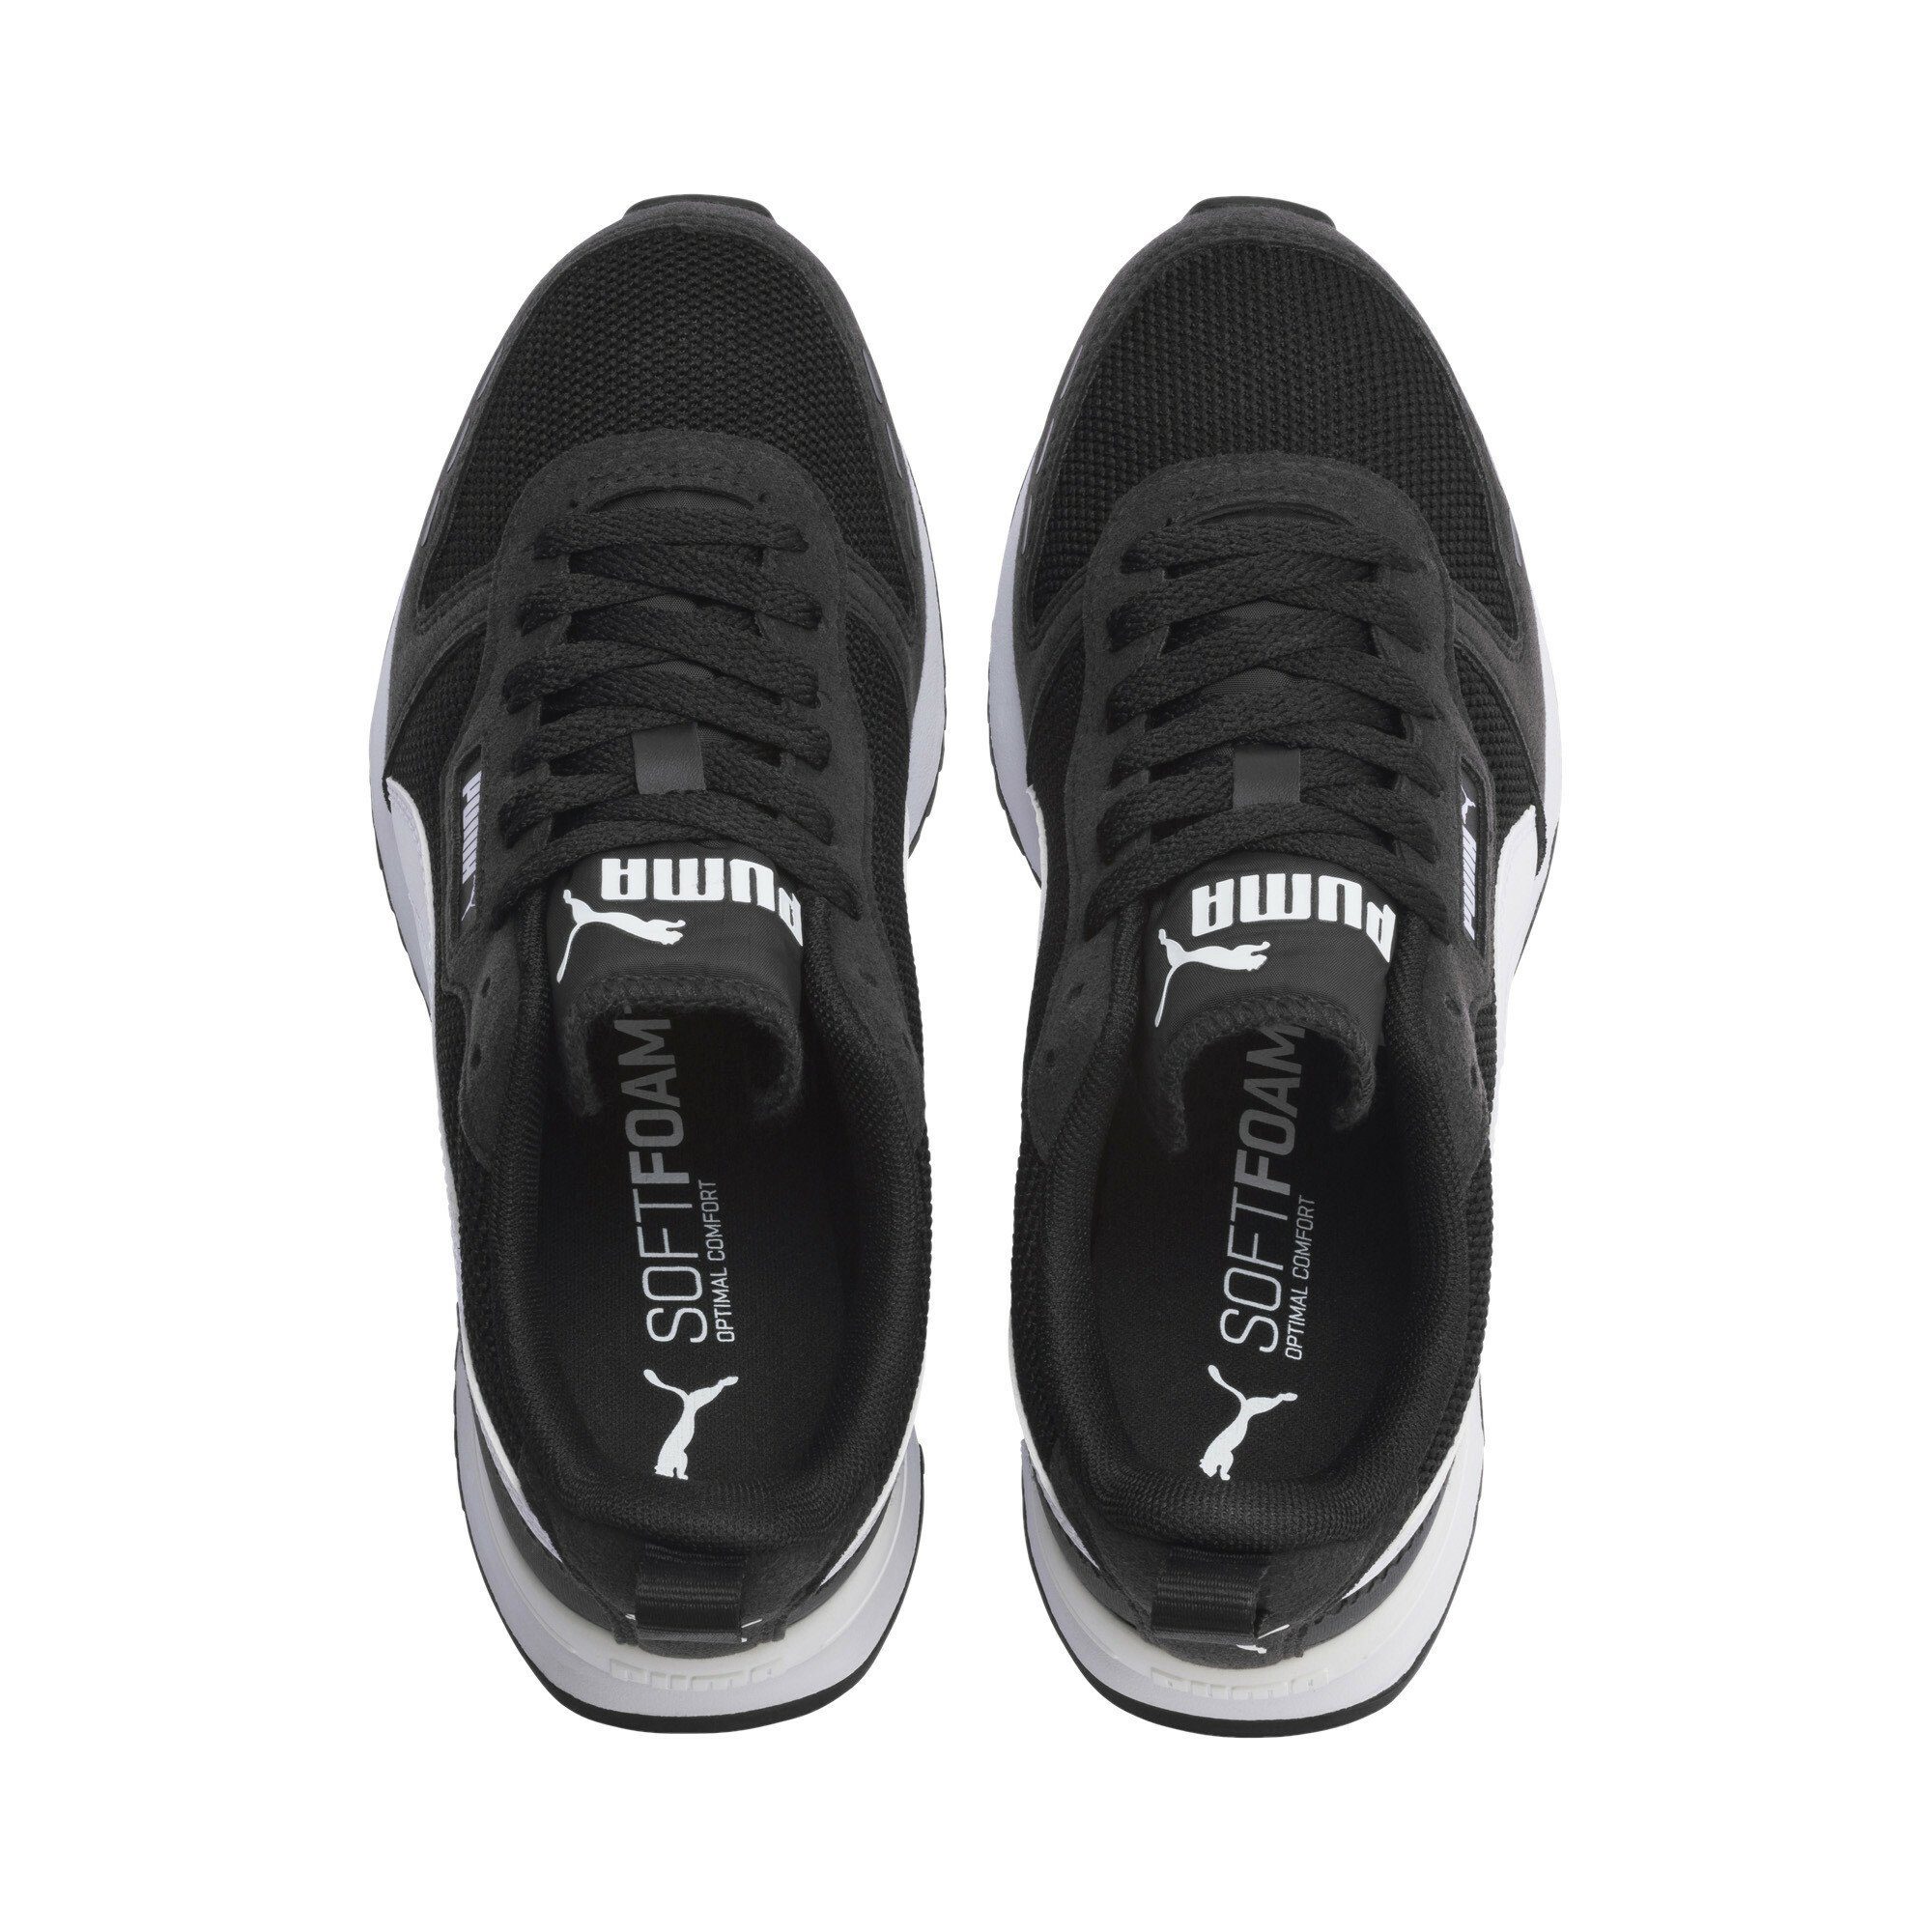 R78 White Jugendliche PUMA Black Sneakers Laufschuh